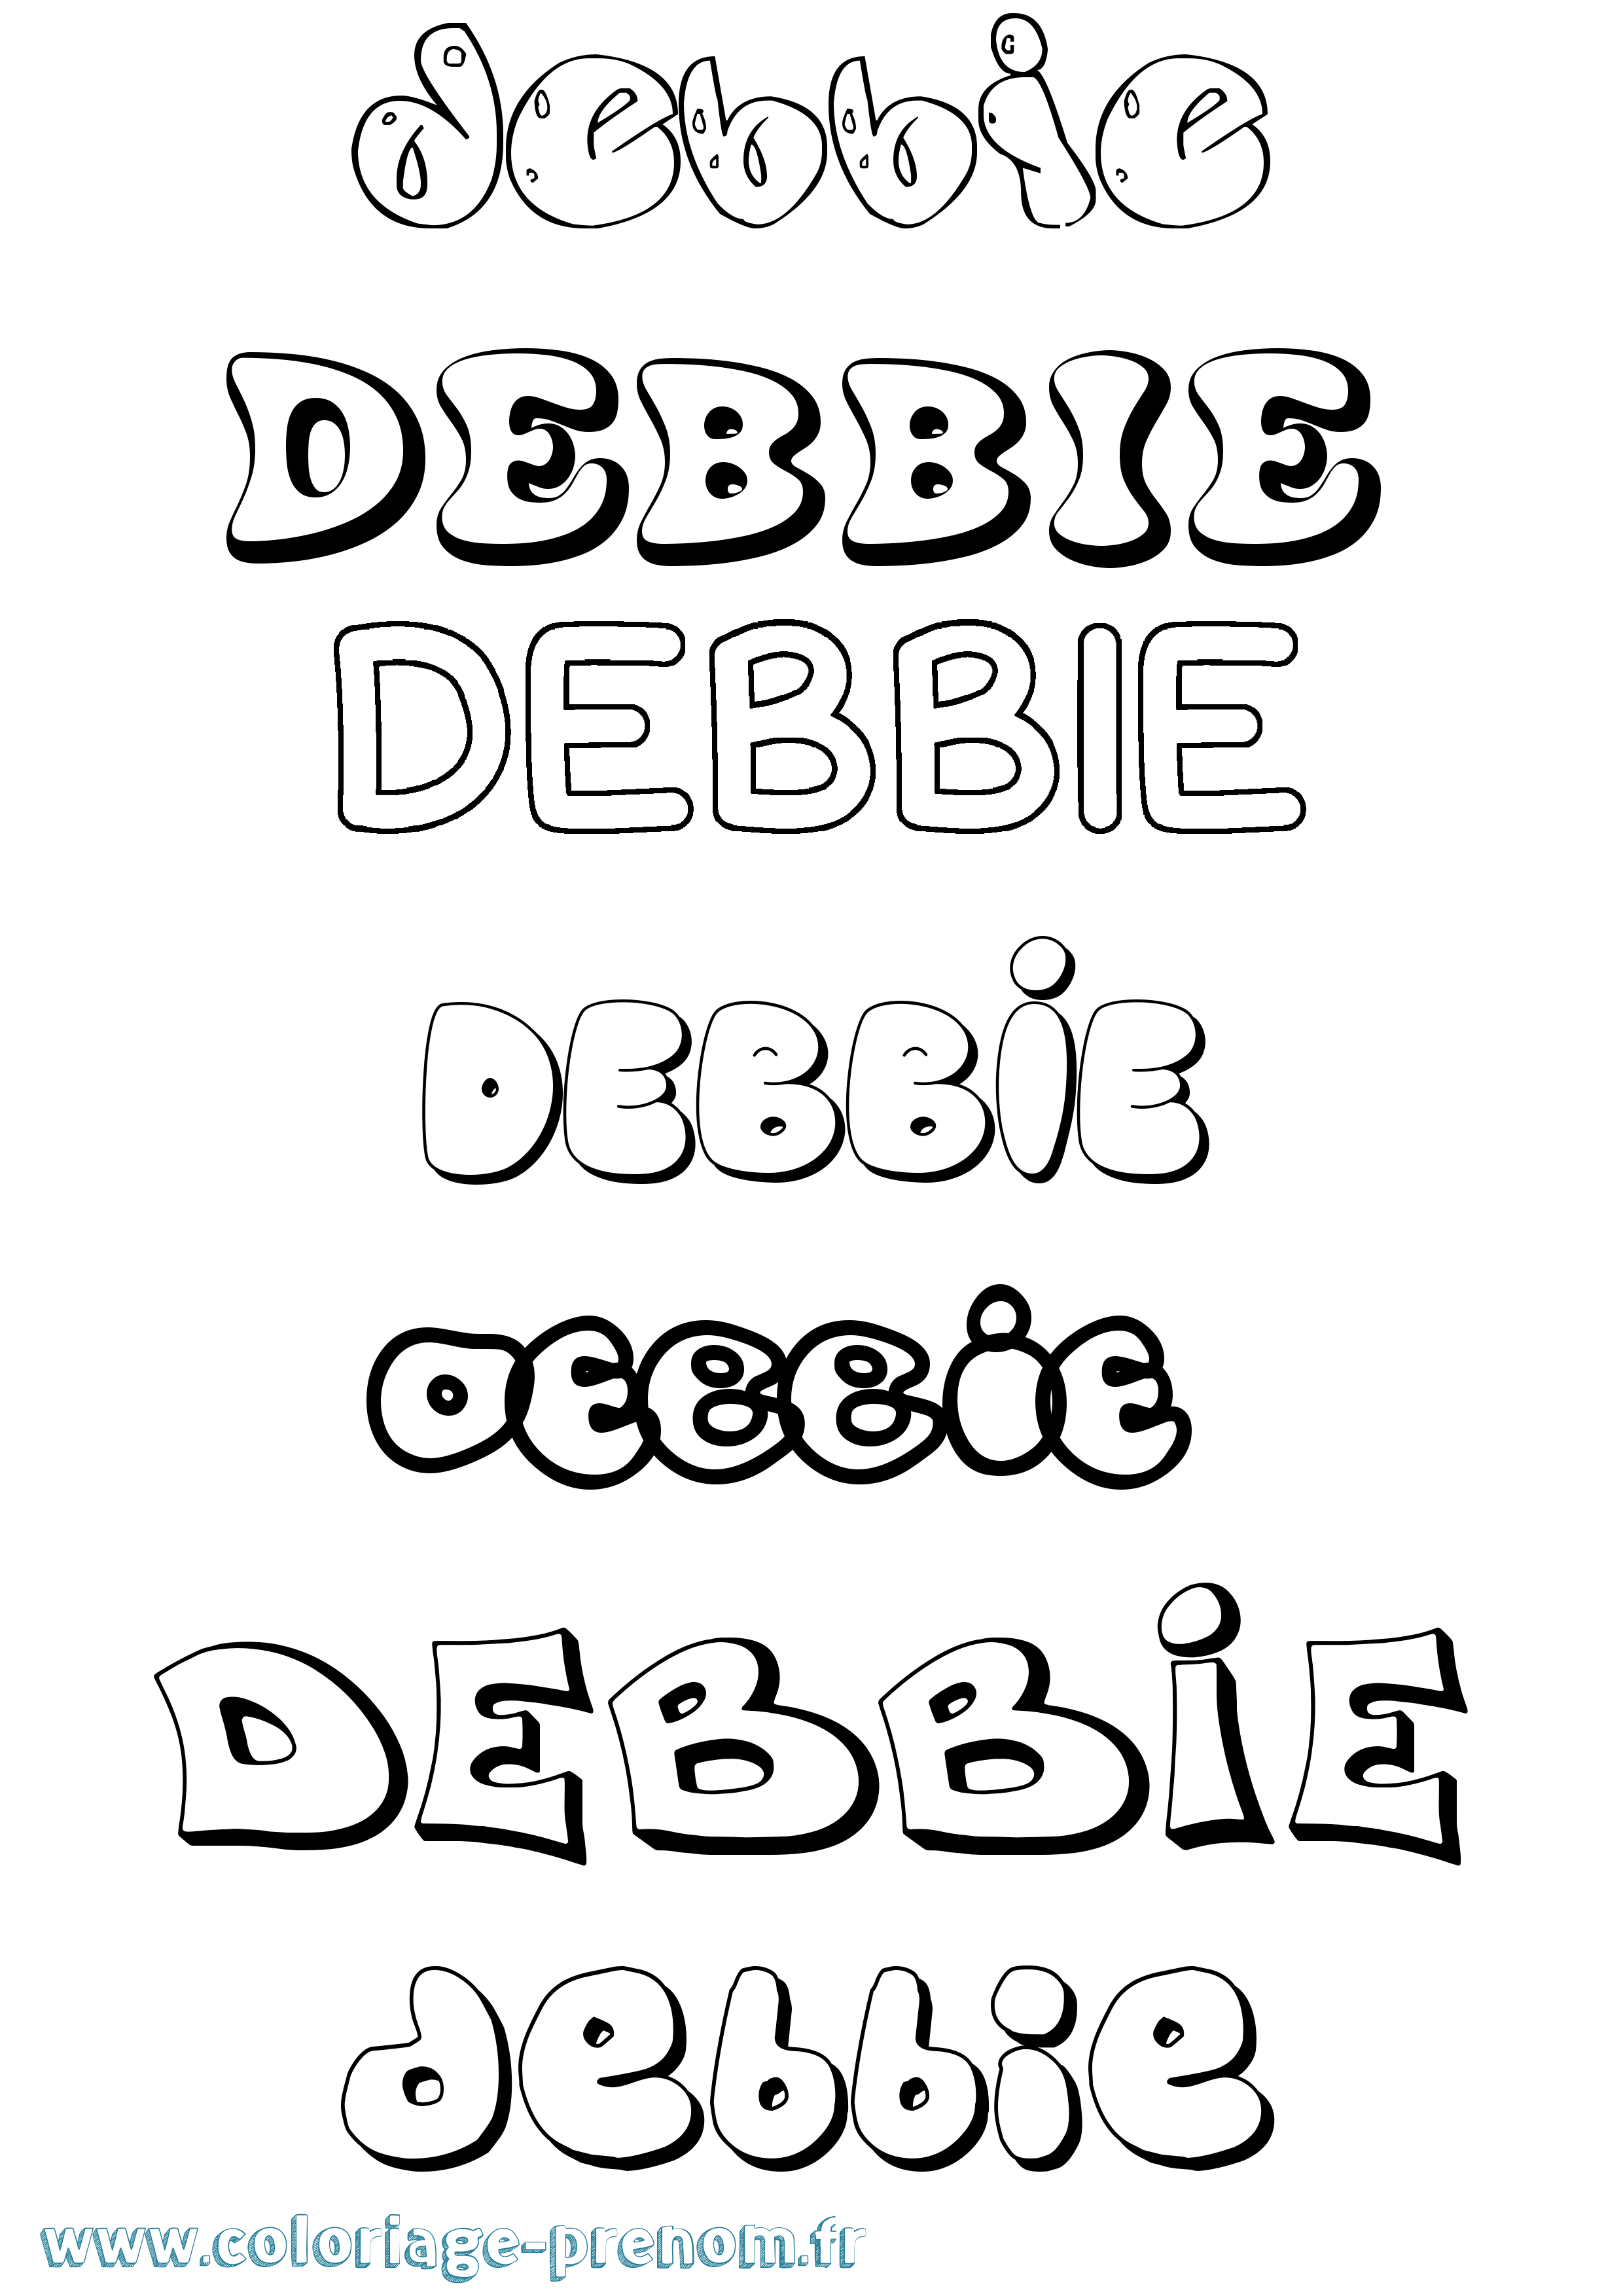 Coloriage prénom Debbie Bubble